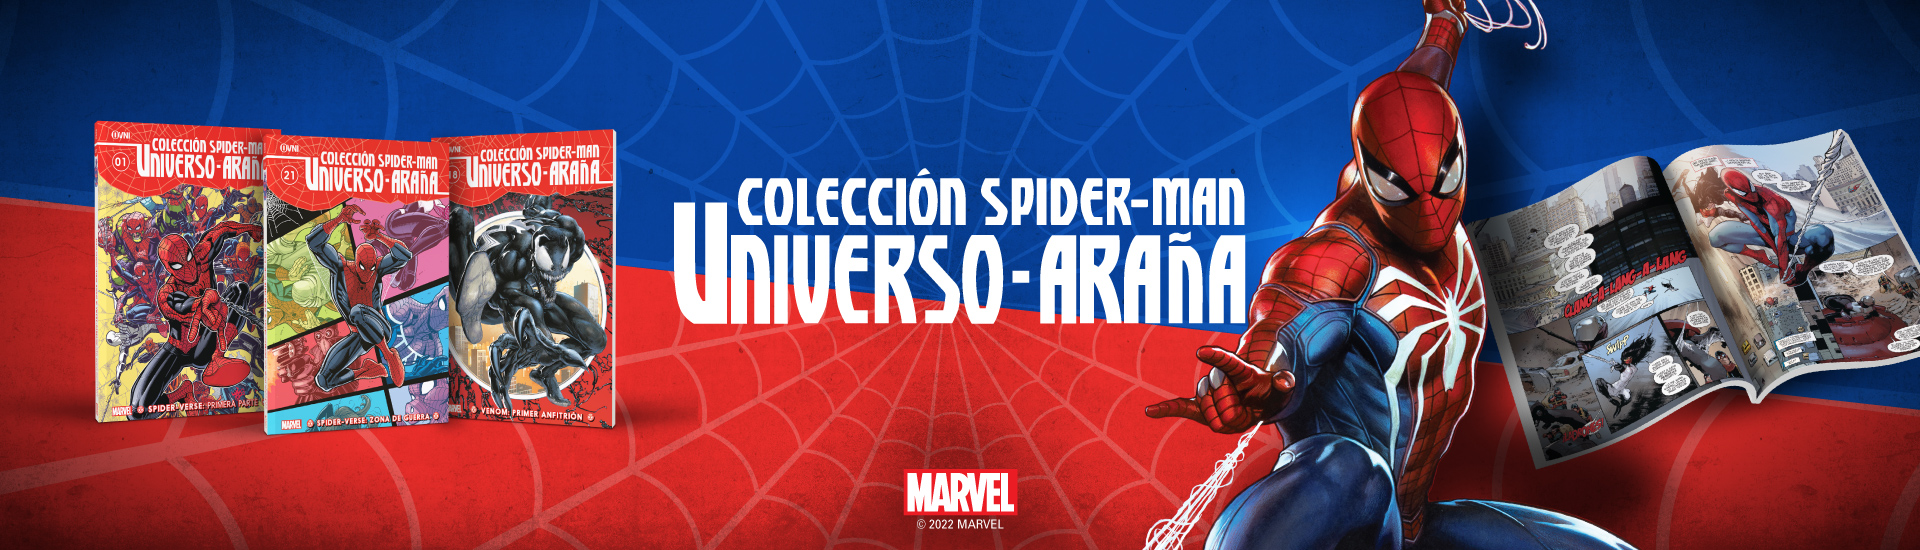 Universo Araña - Colecciones La Nación